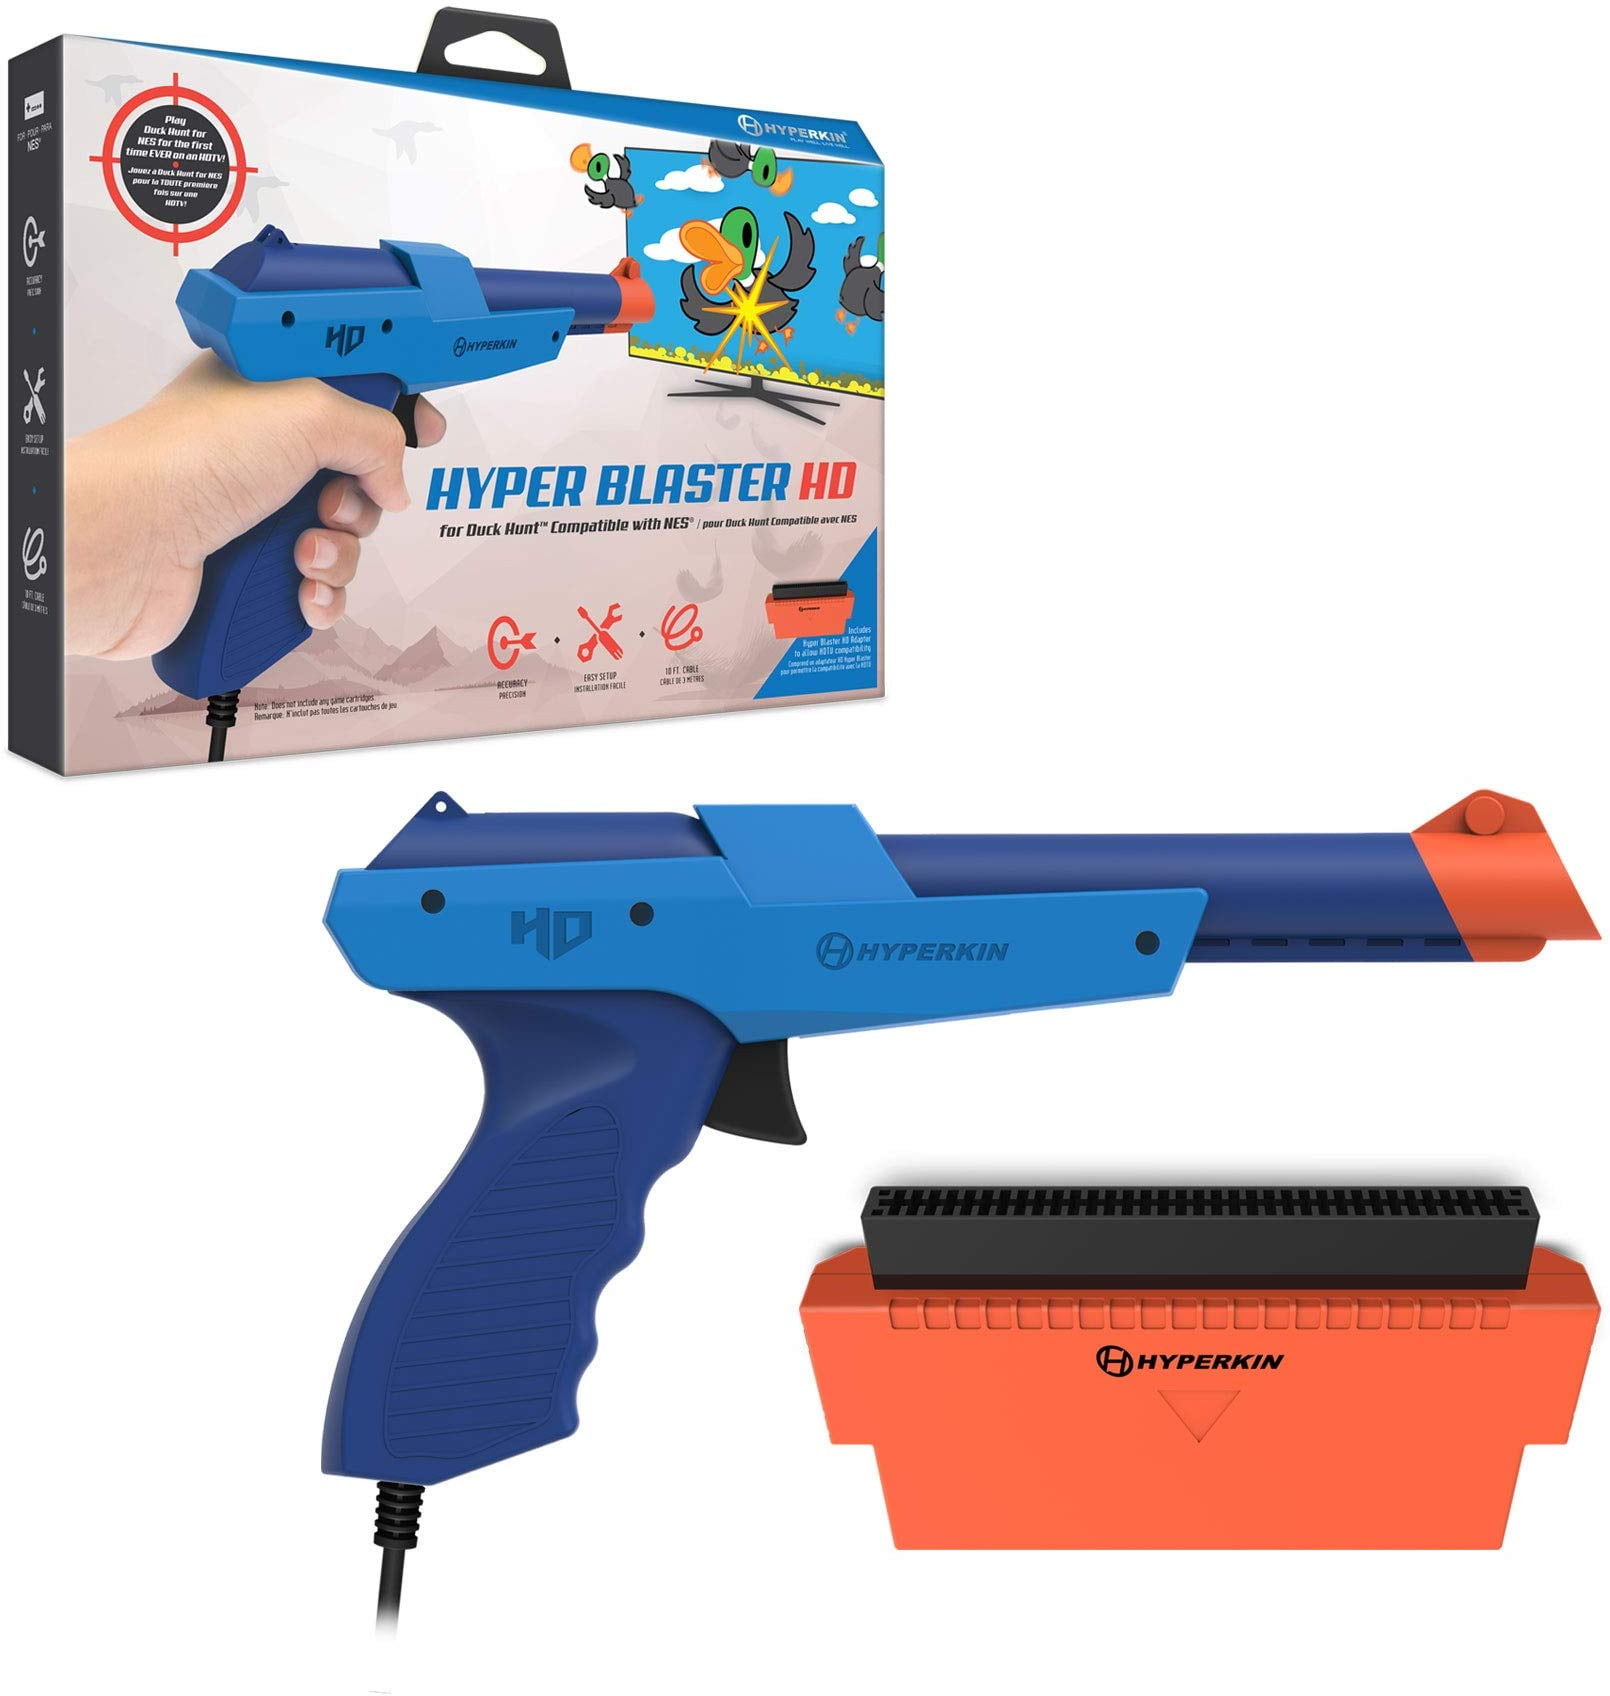 Hyper Blaster Hd Light Gun For Nintendo Nes Duck Hunt Works With